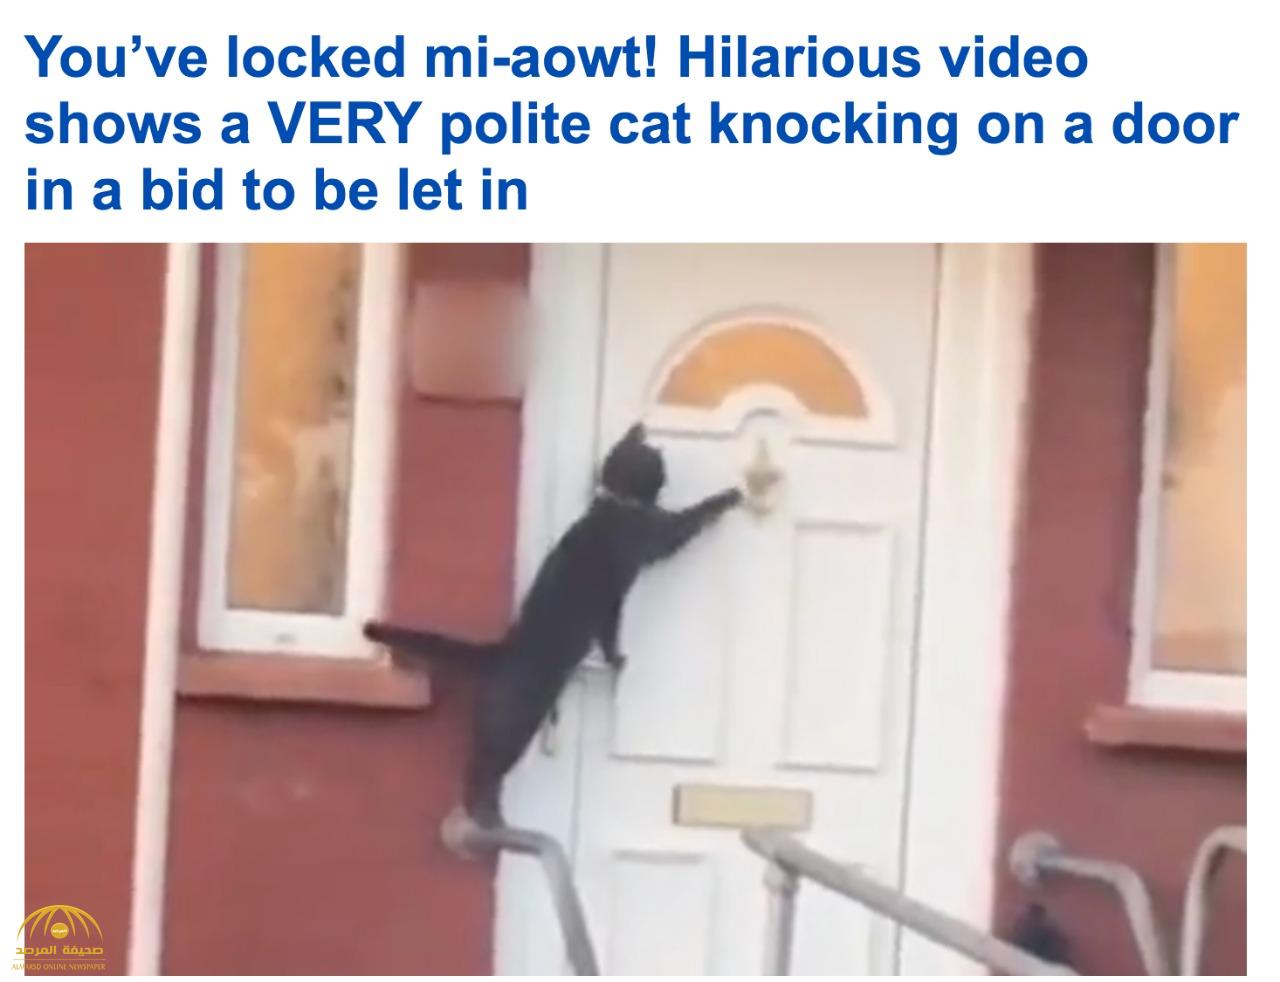 شاهد.. قطة سوداء تستأذن قبل الدخول للمنزل وتطرق الباب 4 مرات.. الفيديو يحطم رقما قياسيا في المشاهدة